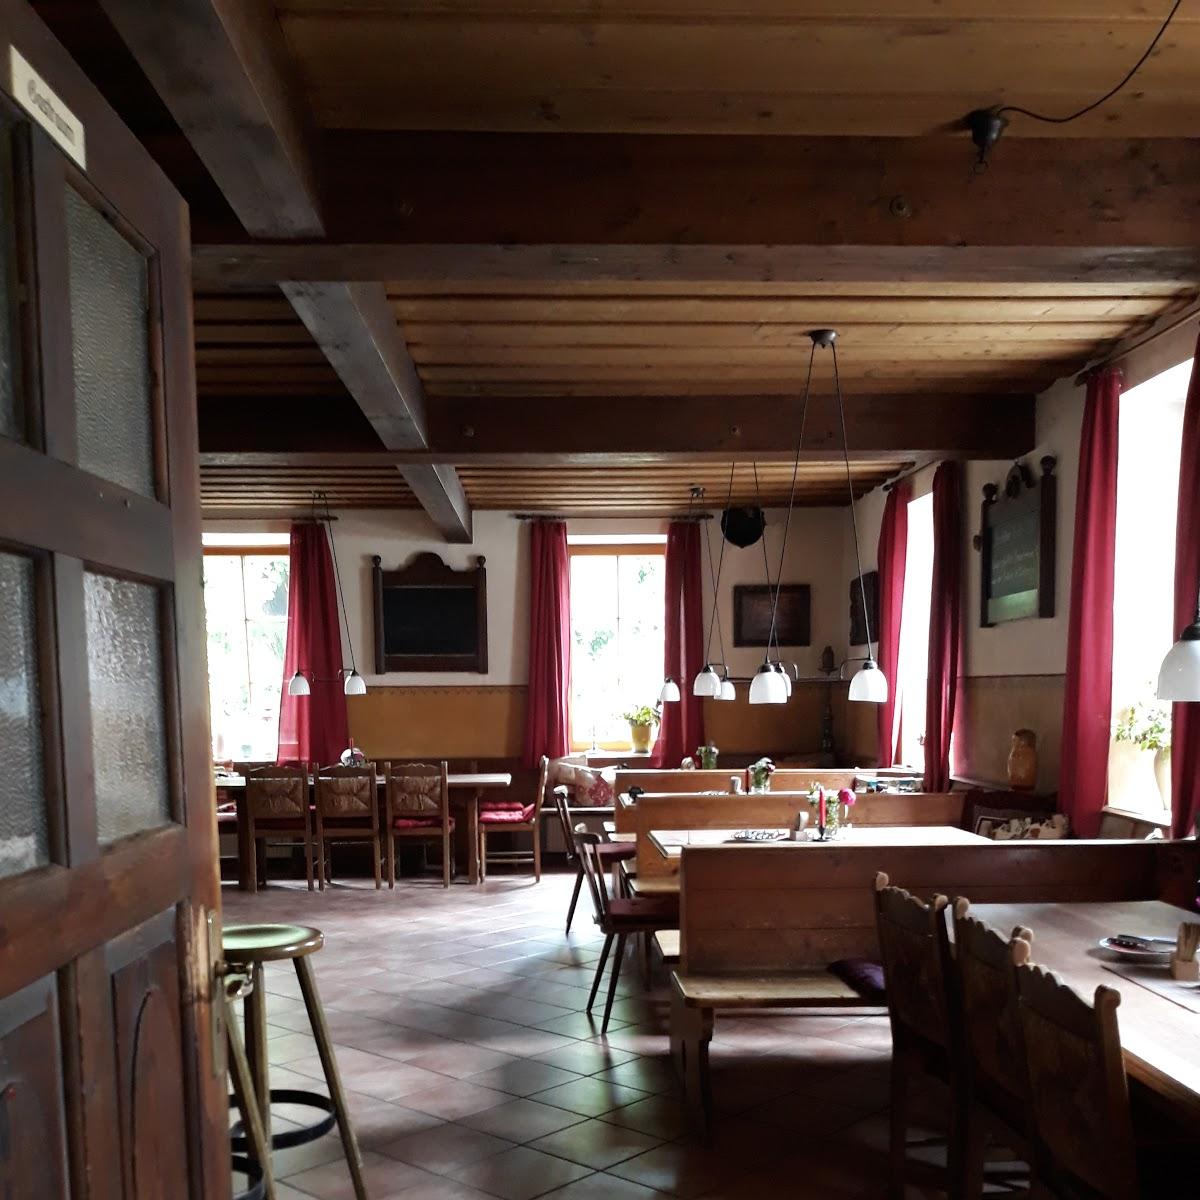 Restaurant "Wirtshaus am Kirchsteig" in Dießen am Ammersee